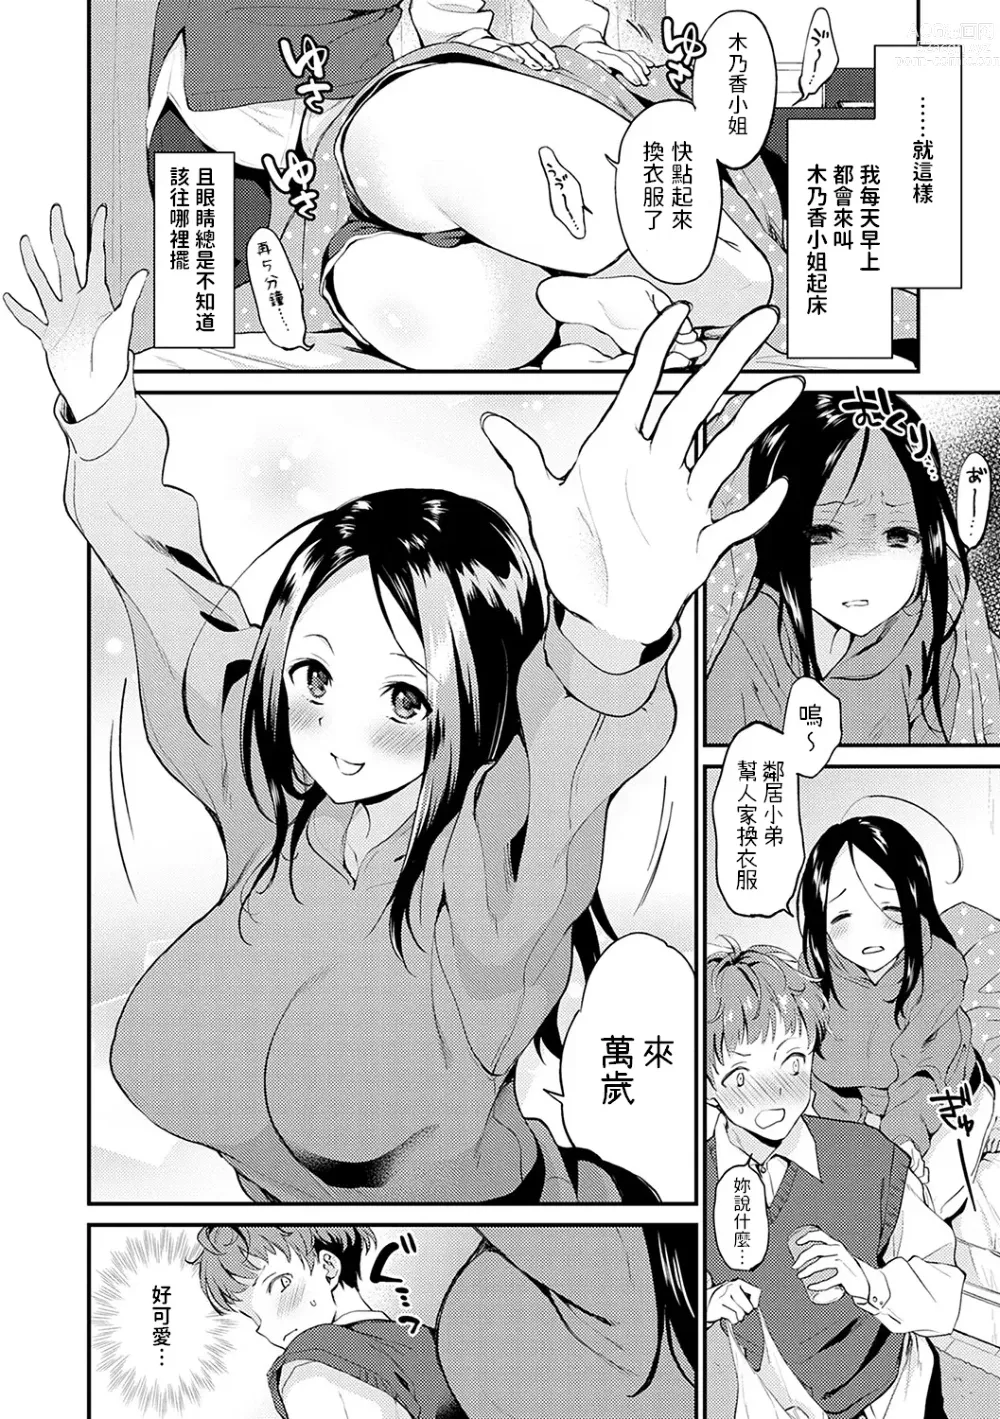 Page 4 of manga Otonari-kun no Otonari-san